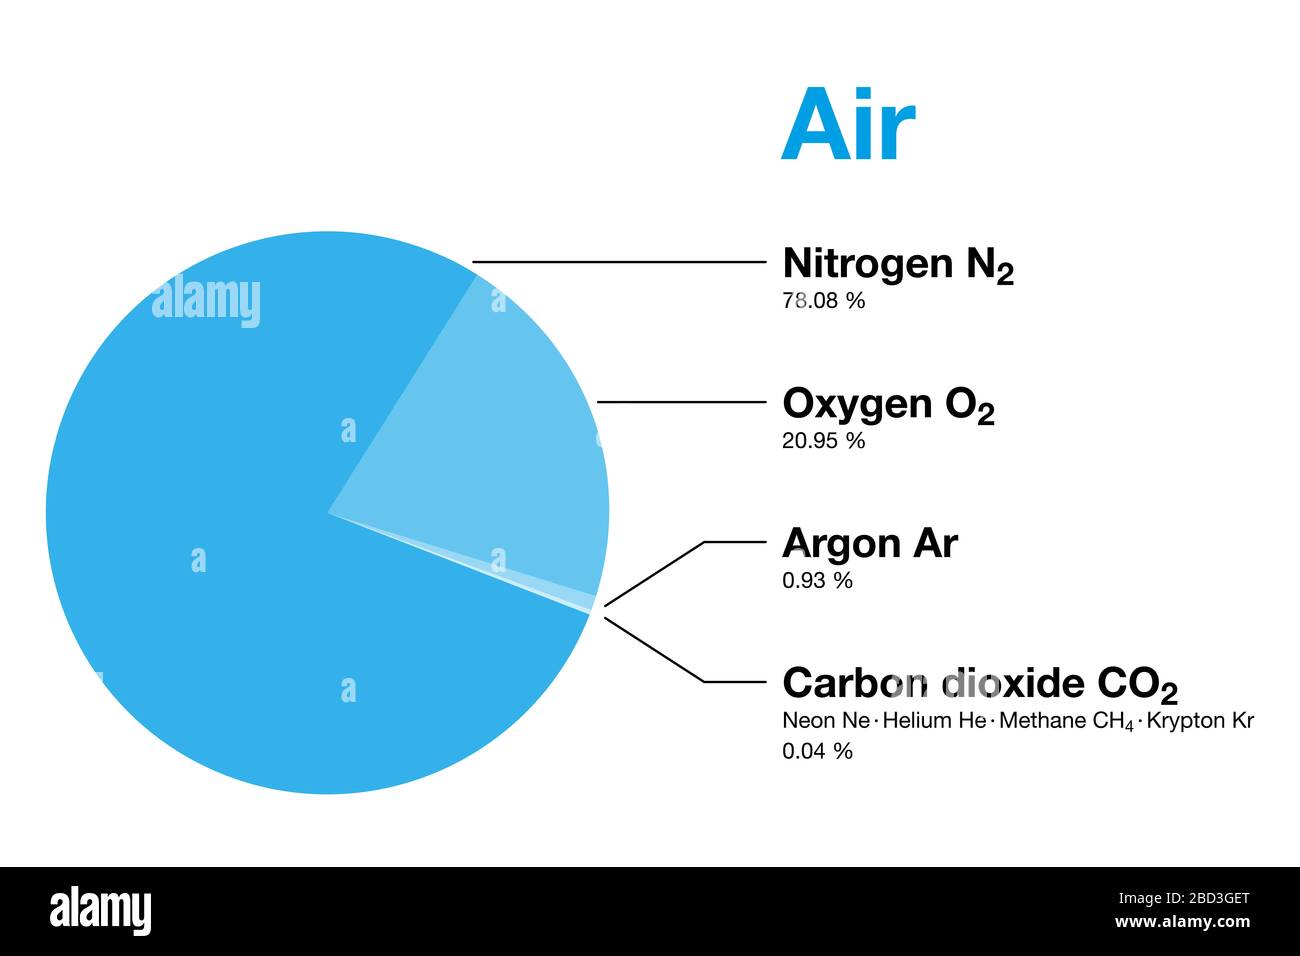 Aria, composizione dell'atmosfera terrestre in volume, escluso il vapore acqueo. L'aria secca contiene azoto, ossigeno, argon, anidride carbonica e altri gas. Foto Stock